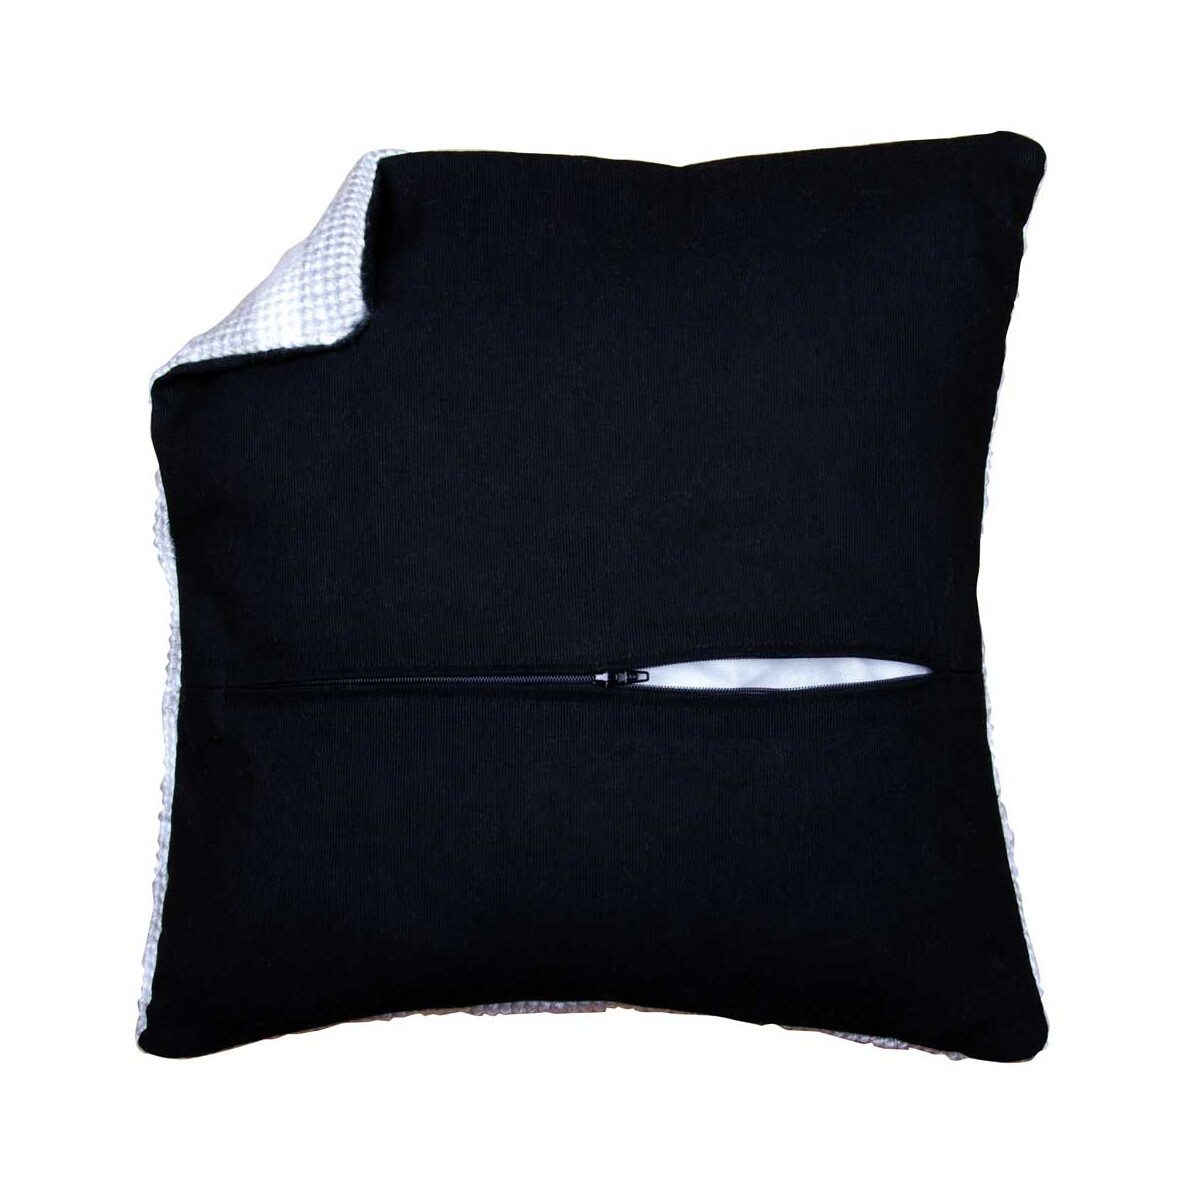 Vervacokussen rug met rits - Zwart, 45 x 45 cm